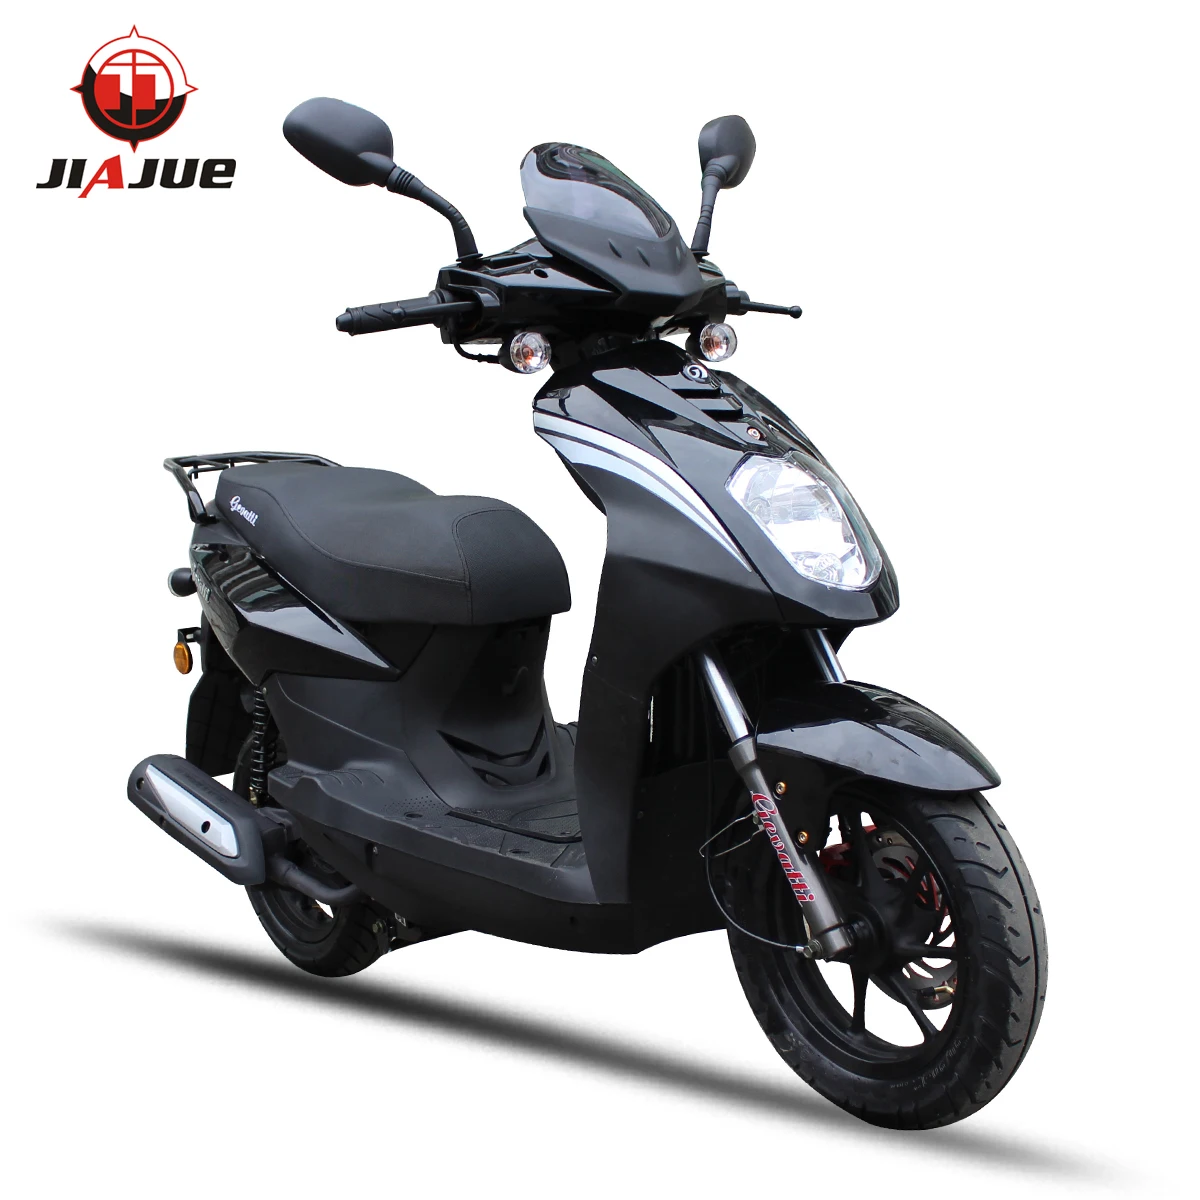 Jiajue 空气冷却气体滑板车50cc Buy 滑板车 气体滑板车 滑板车50cc Product On Alibaba Com